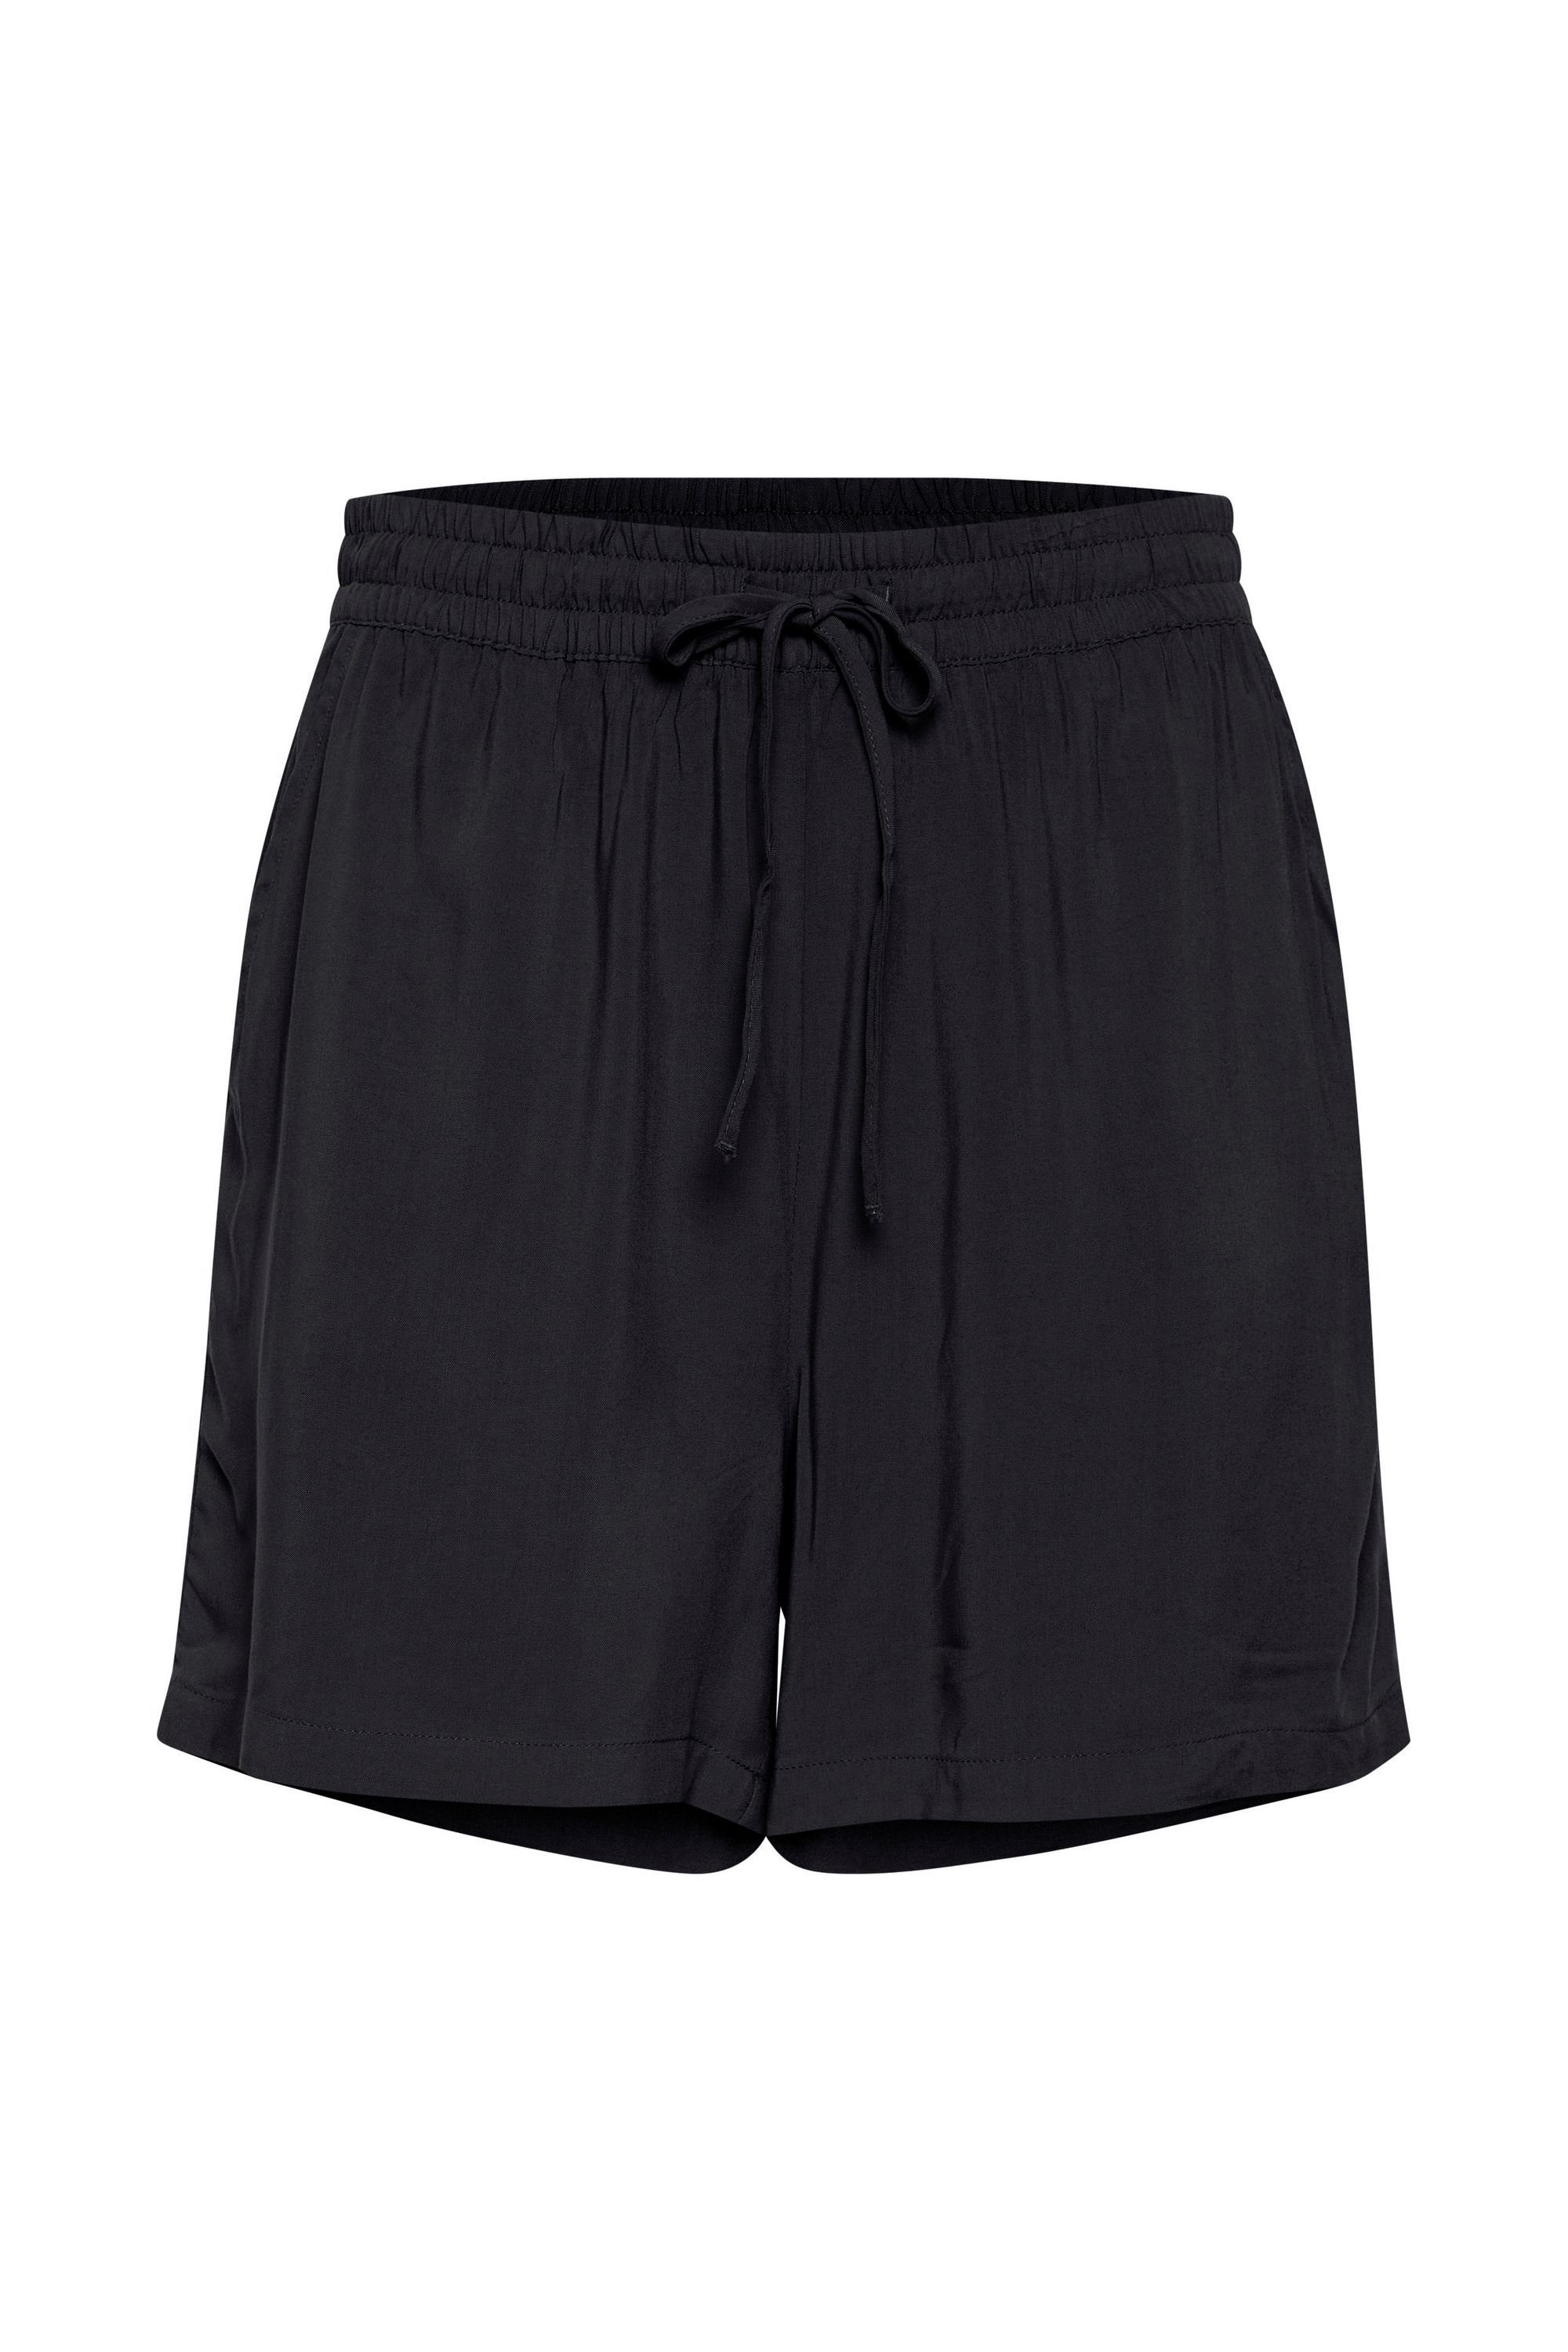 (200451) - BYMMJOELLA Black Muster SHORTS Shorts Luftige b.young 20809730 mit Shorts